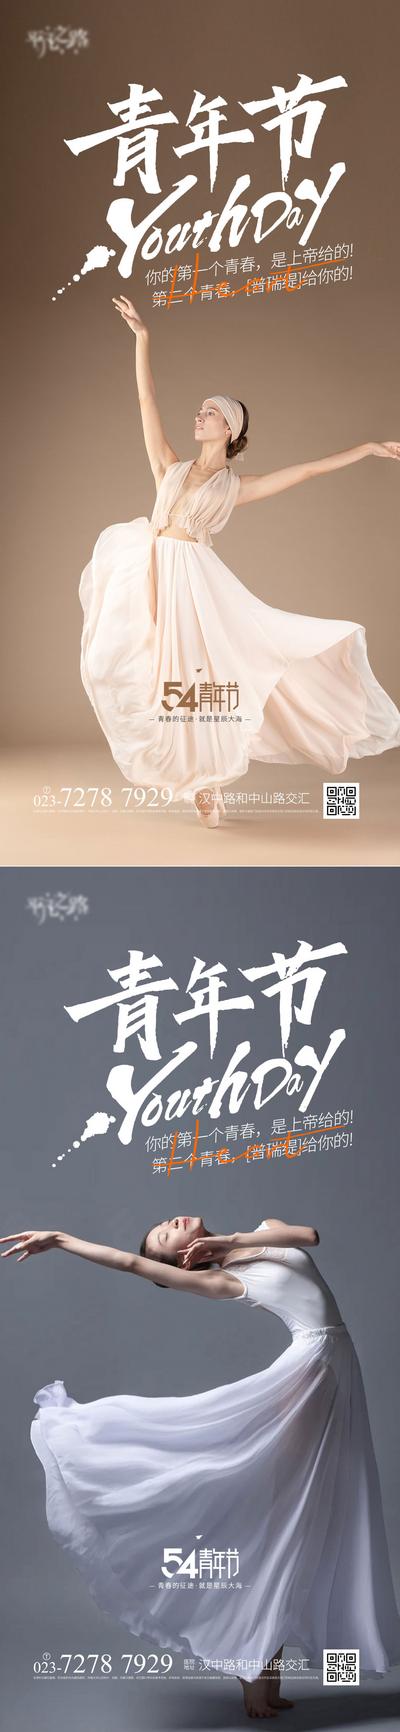 南门网 海报 背景板 节气 青年节 节日 医美海报 户外 单张 54青年节 舞蹈 优雅 系列